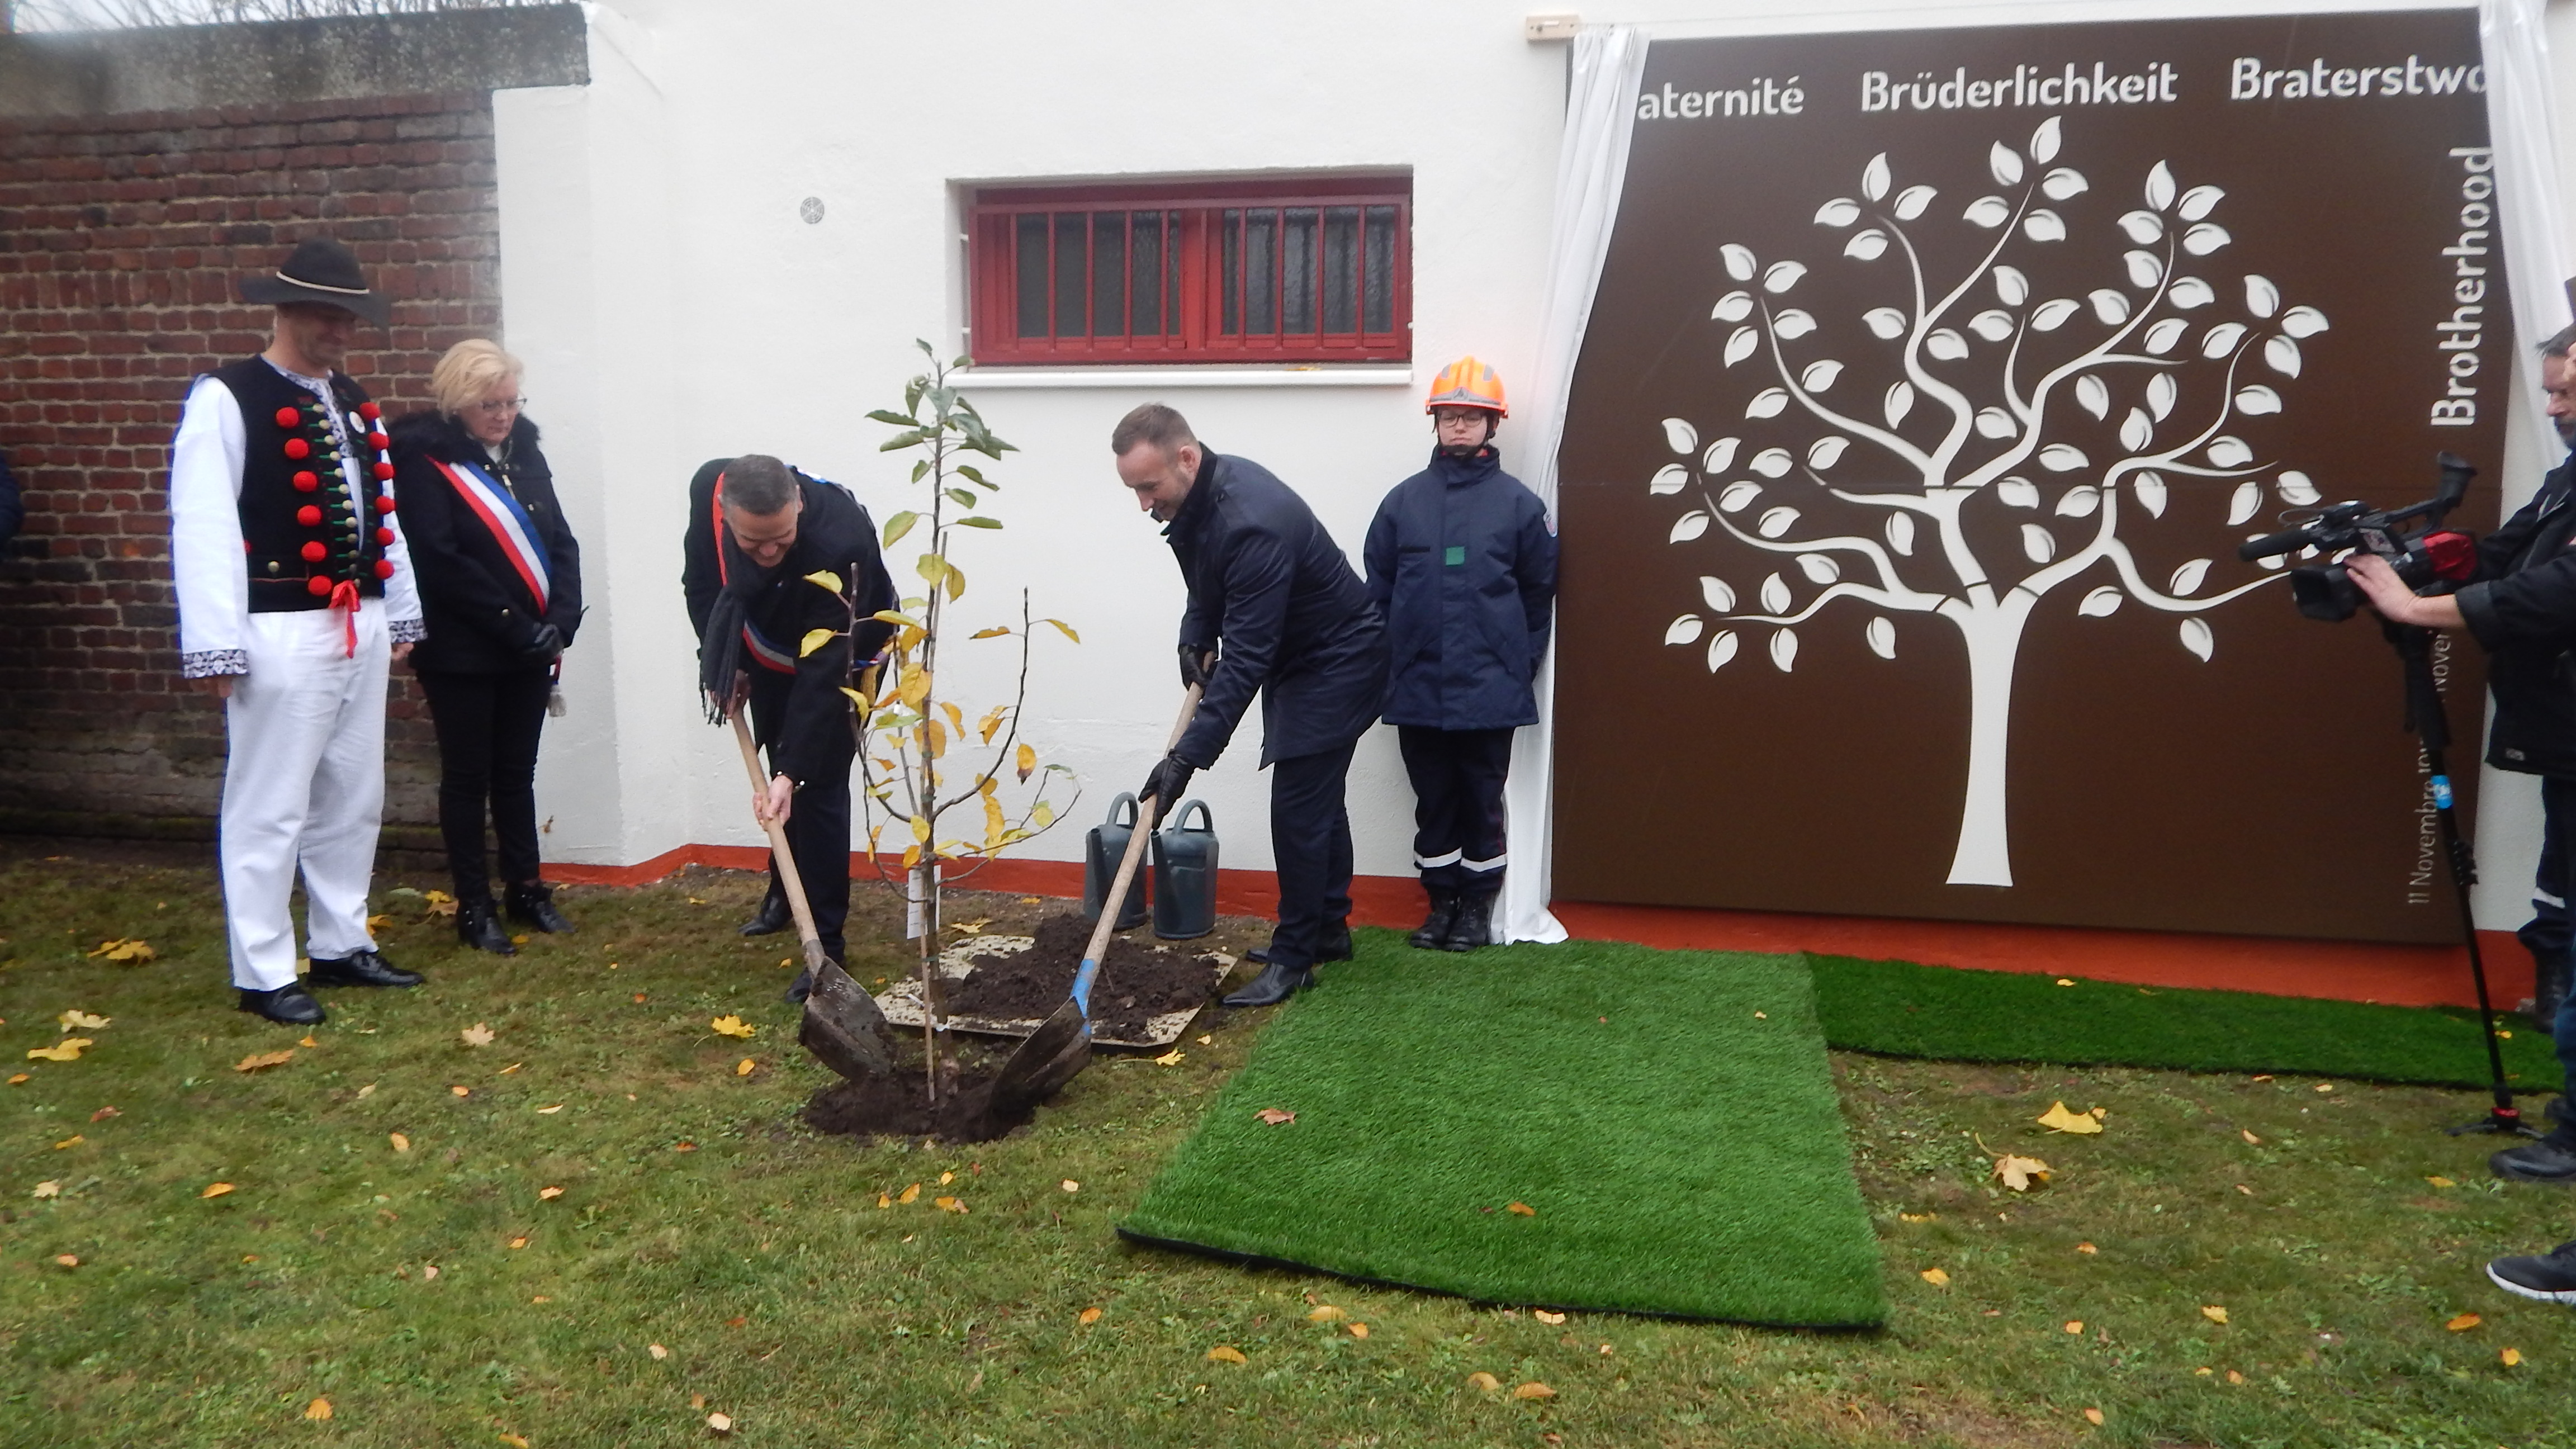  Ein Apfelbaum-Setzling aus Elsdorf wurde von den beiden Bürgermeistern als Zeichen der Brüderlichkeit feierlich eingepflanzt. 